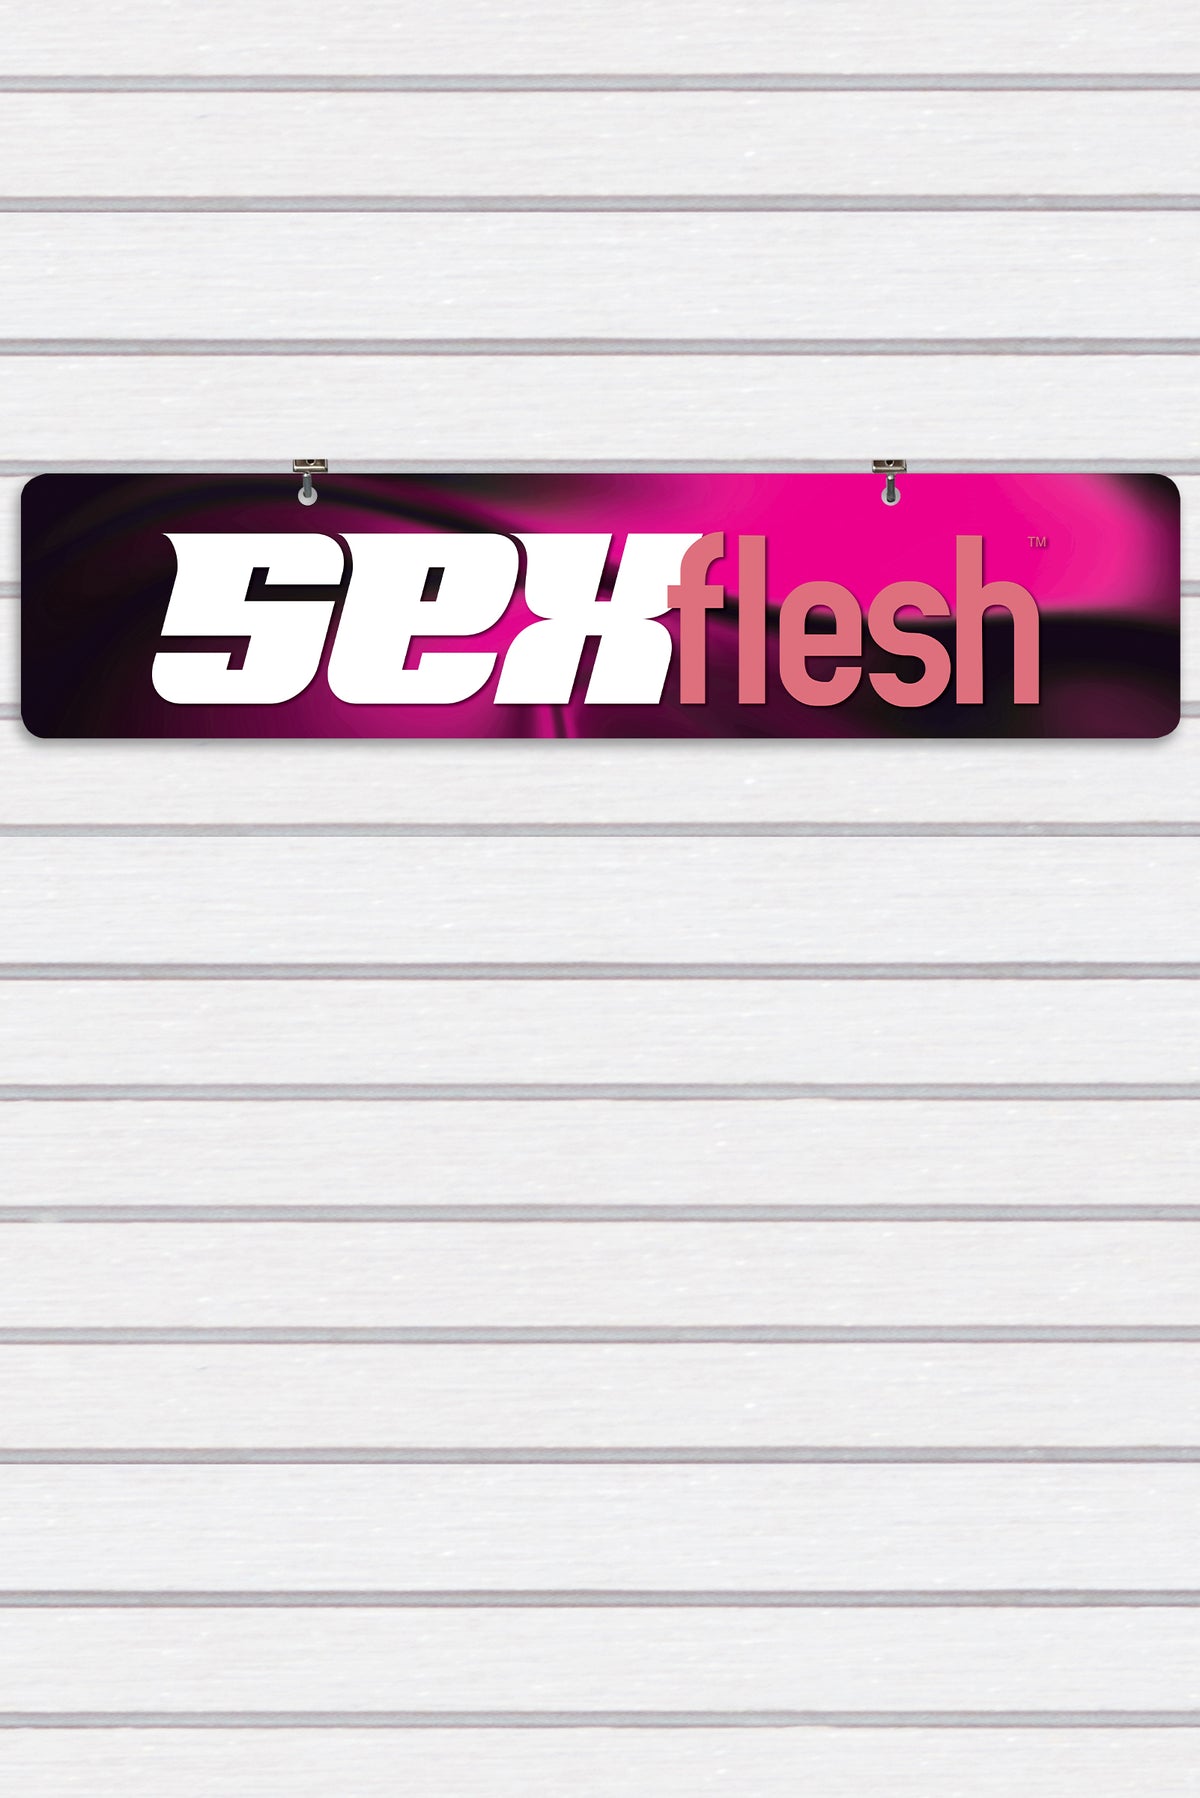 SexFlesh Display Sign